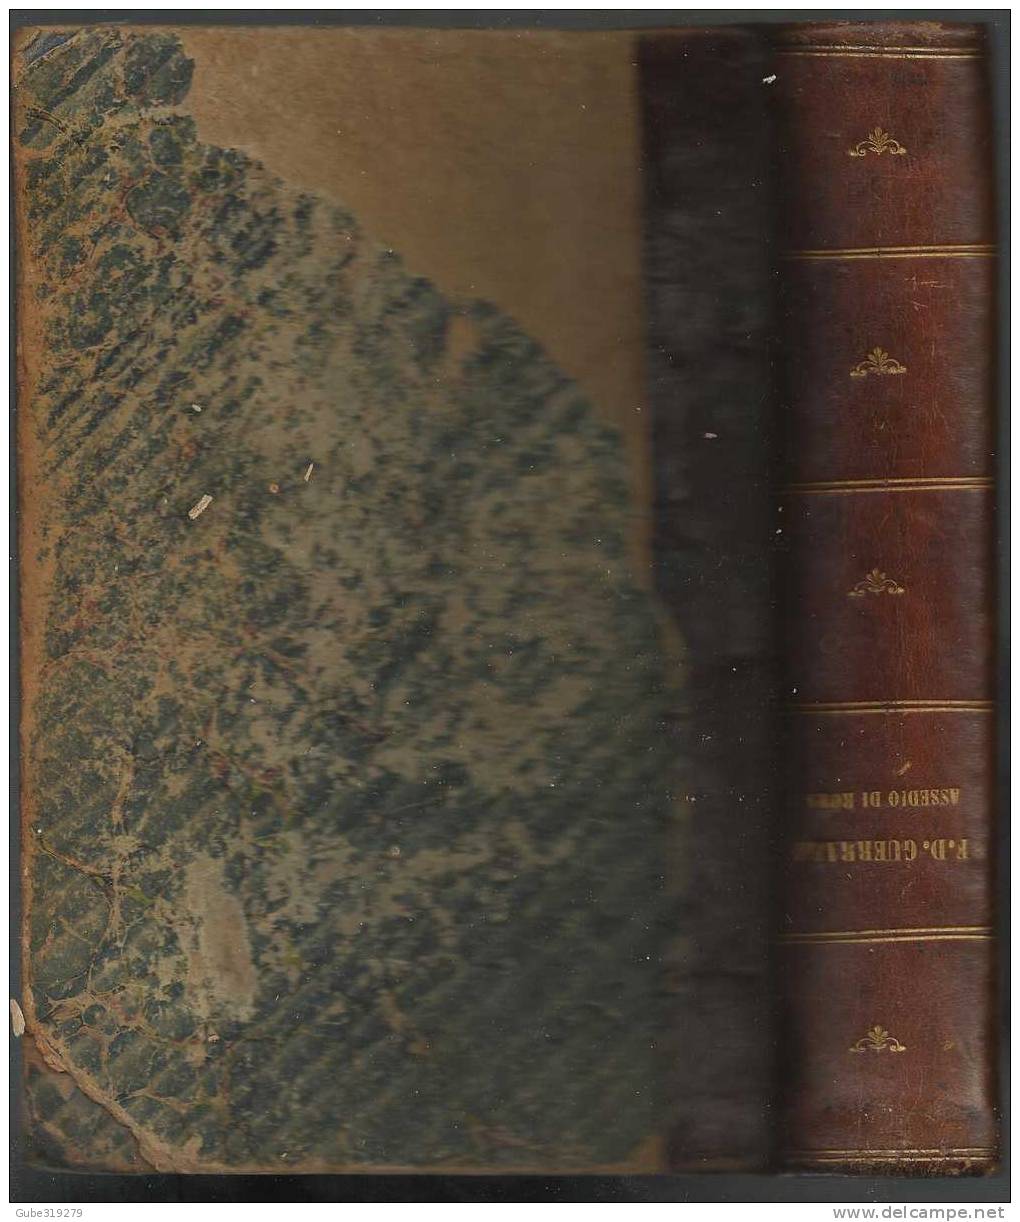 ANNO 1864-REF 21 - LO ASSEDIO DI ROMA - DI F.D. GUERRAZZI - RIVEDUTA DALL'AUTORE - LIVORNO TIP. A.B.ZECCHINI - Libri Antichi